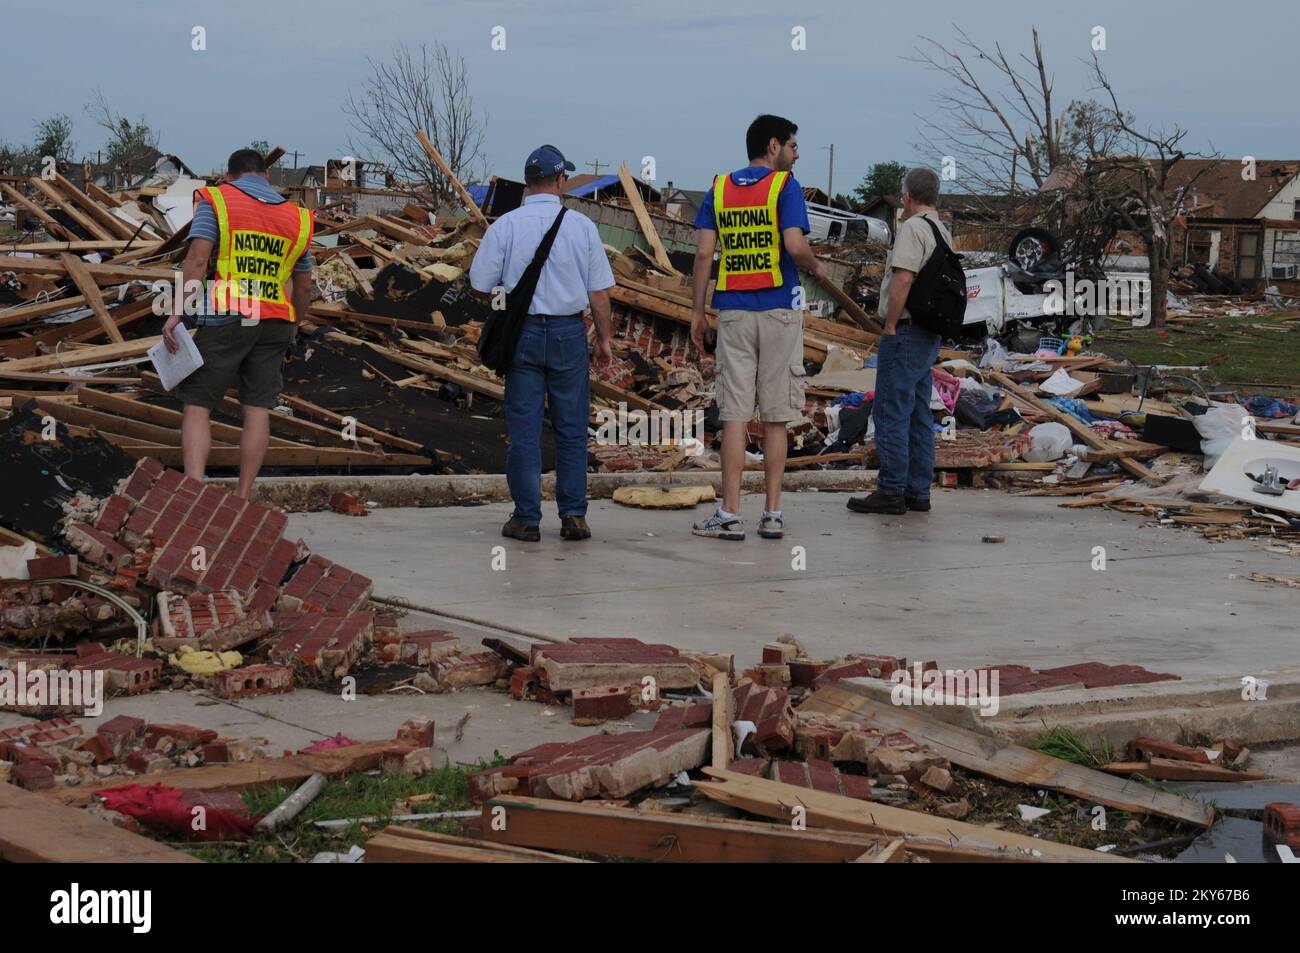 National Weather Service am Katastrophenort... Fotos zu Katastrophen- und Notfallmanagementprogrammen, Aktivitäten und Beamten Stockfoto